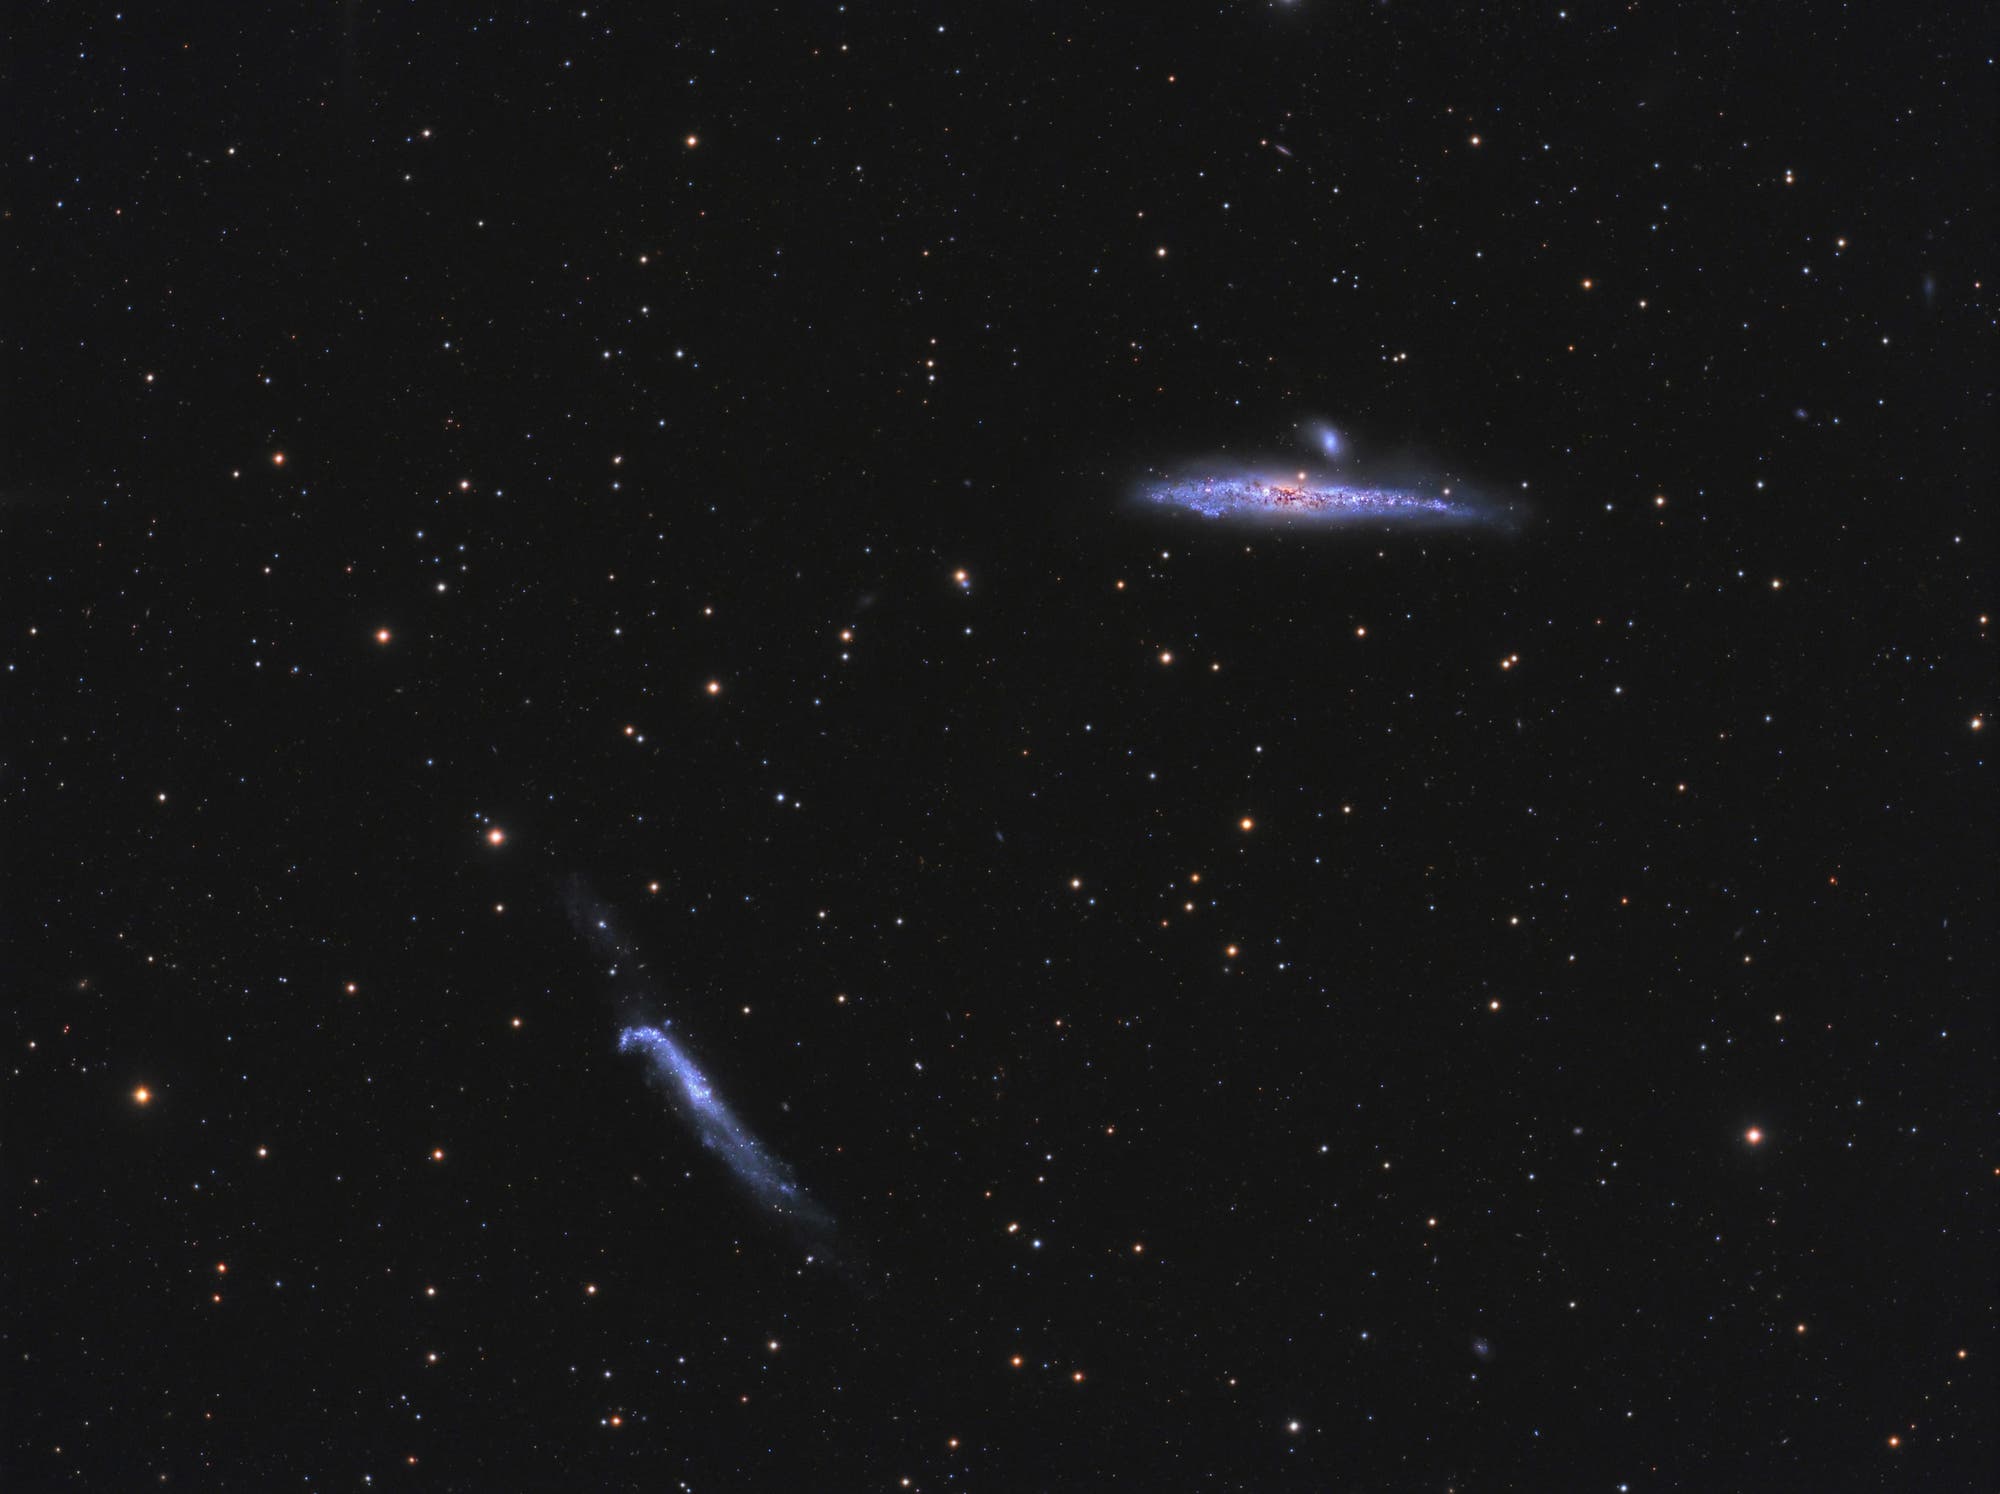 Der Walfisch und der Hockeyschläger (NGC 4631 und 4656)